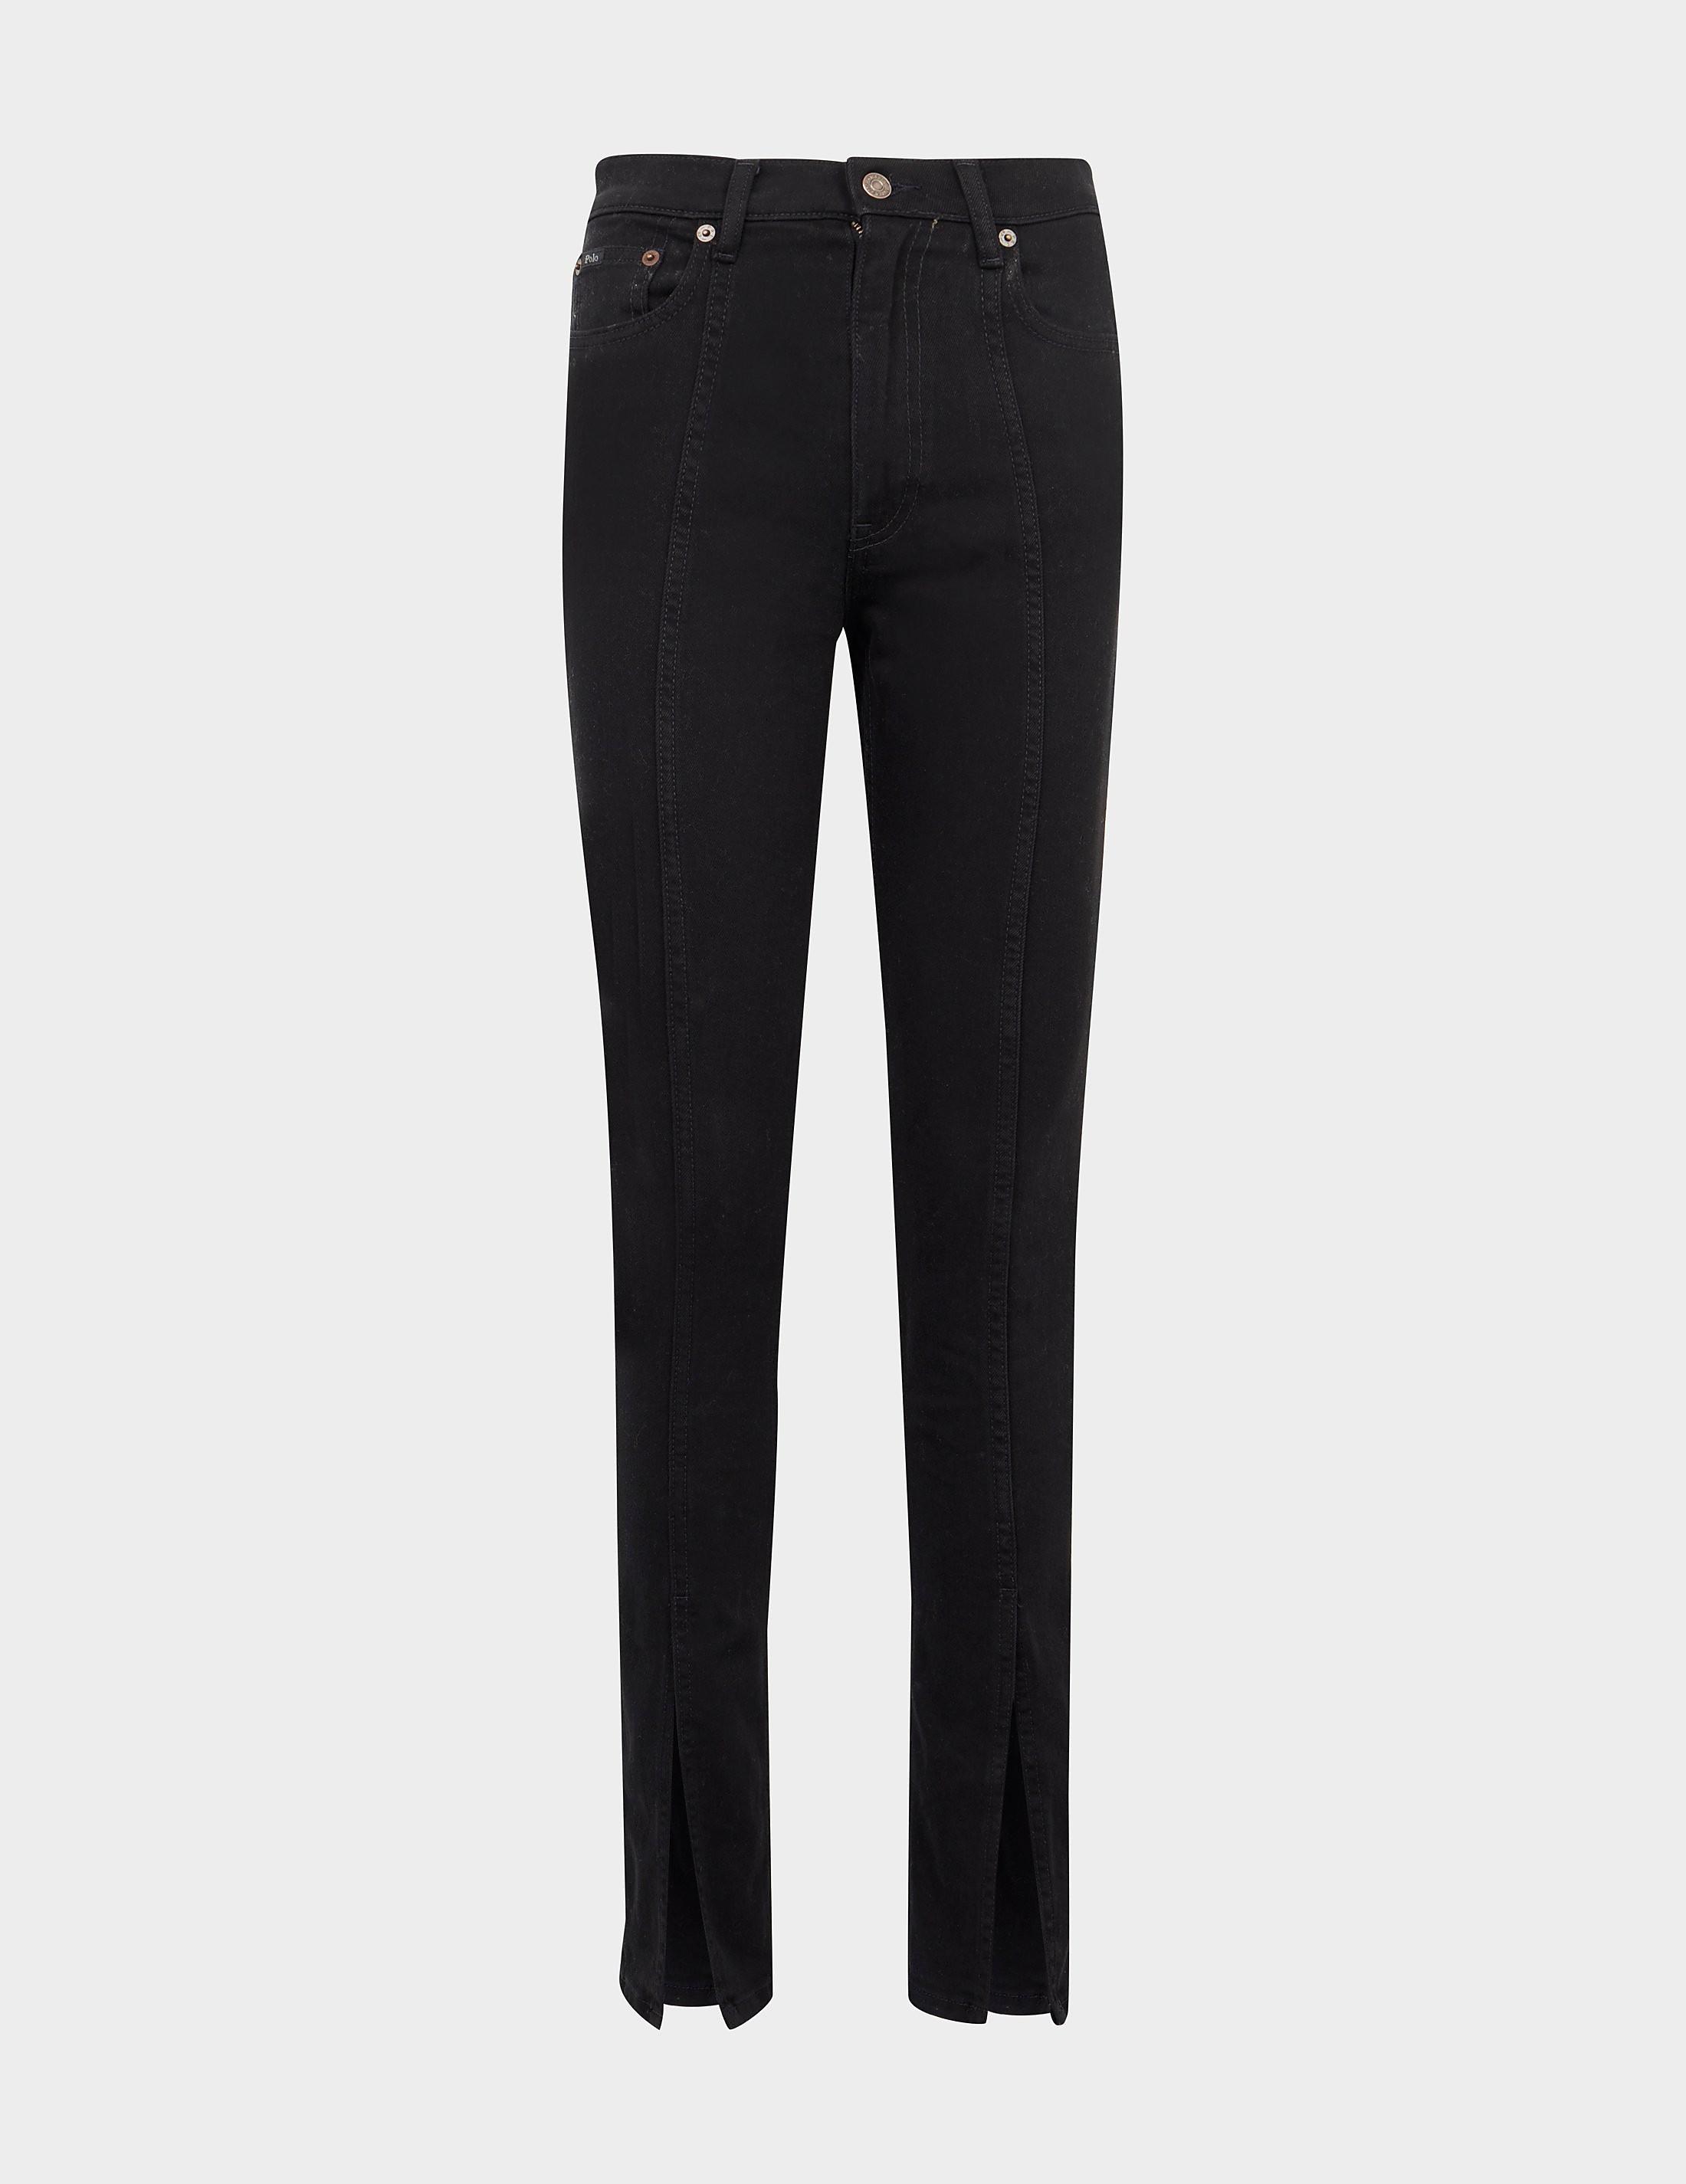 Polo Ralph Lauren Split Ankle Skinny Jeans in Black | Lyst